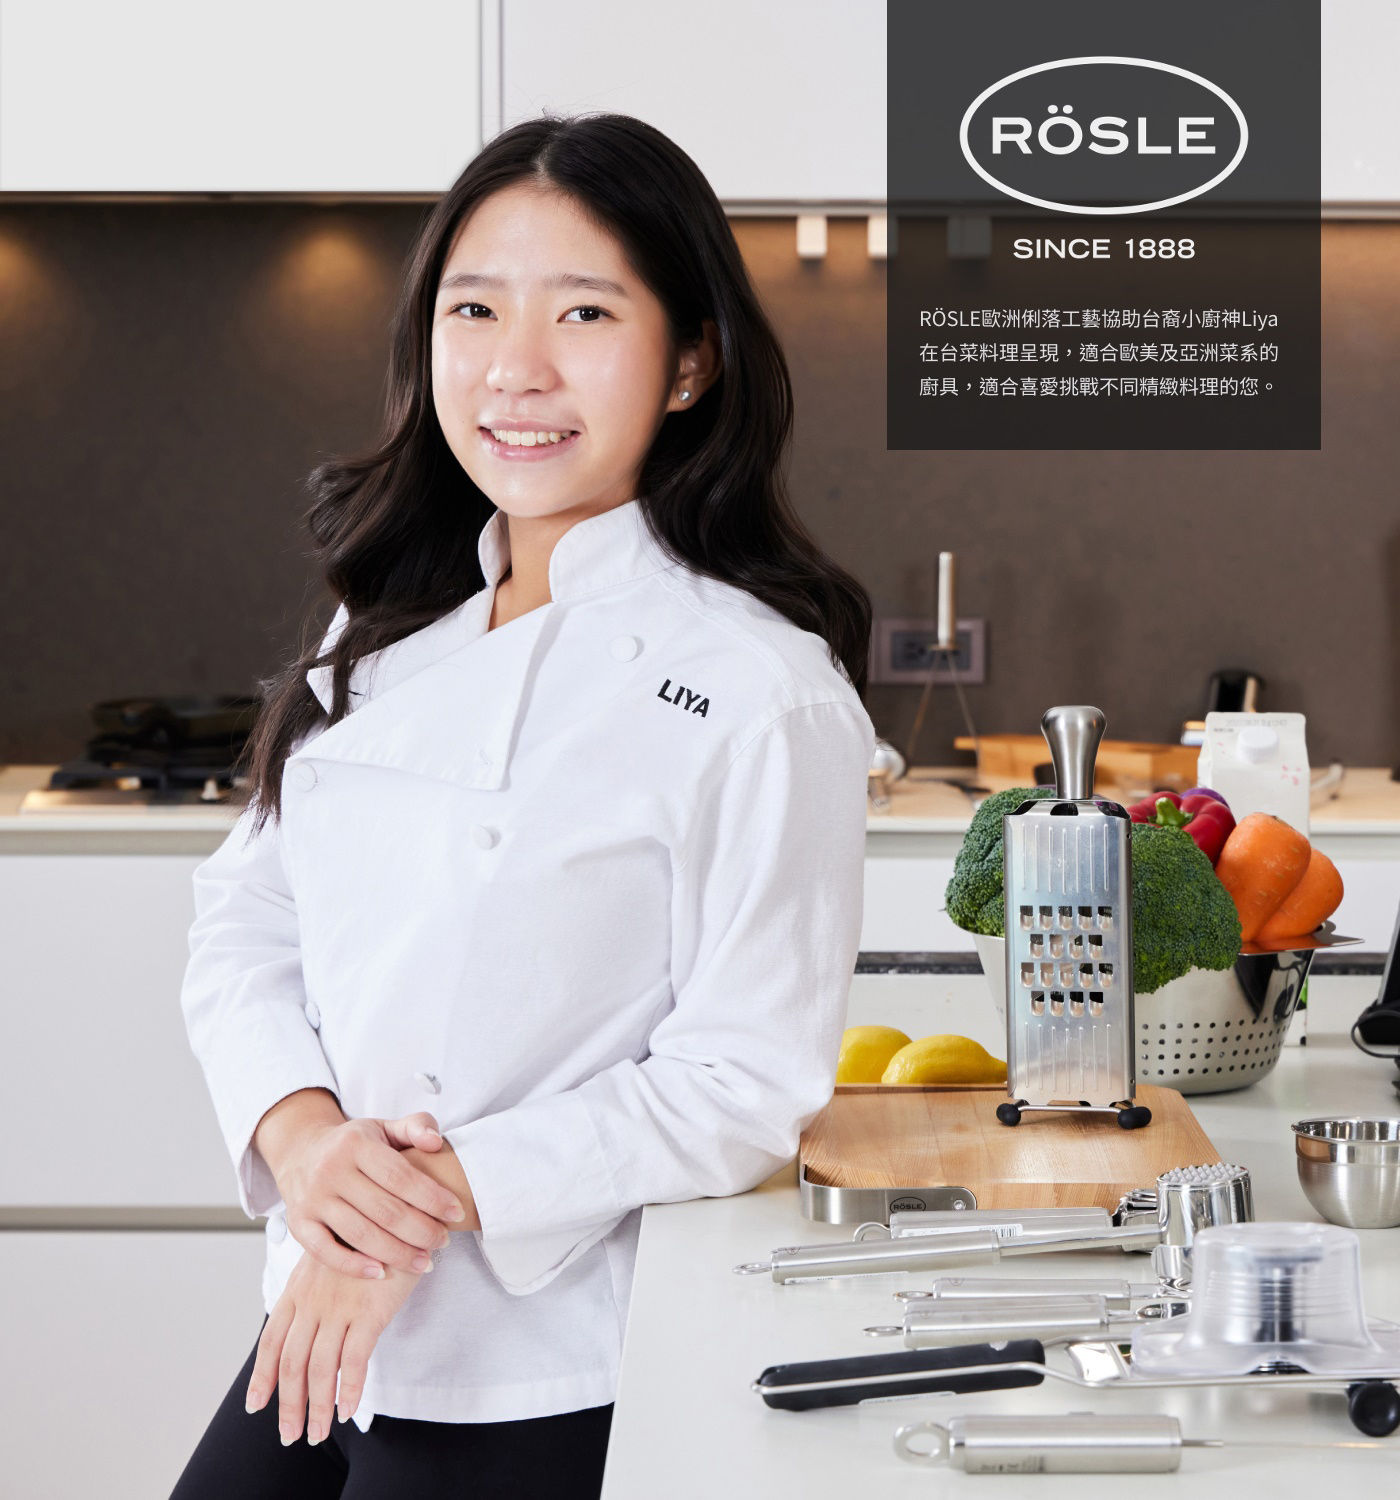 Rosle不鏽鋼馬鈴薯壓泥器RÖSLE歐洲俐落工藝協助台裔小廚神Liya在台菜料理呈現.適合歐美及亞洲菜系的廚具.適合喜愛挑戰不同精緻料理的您